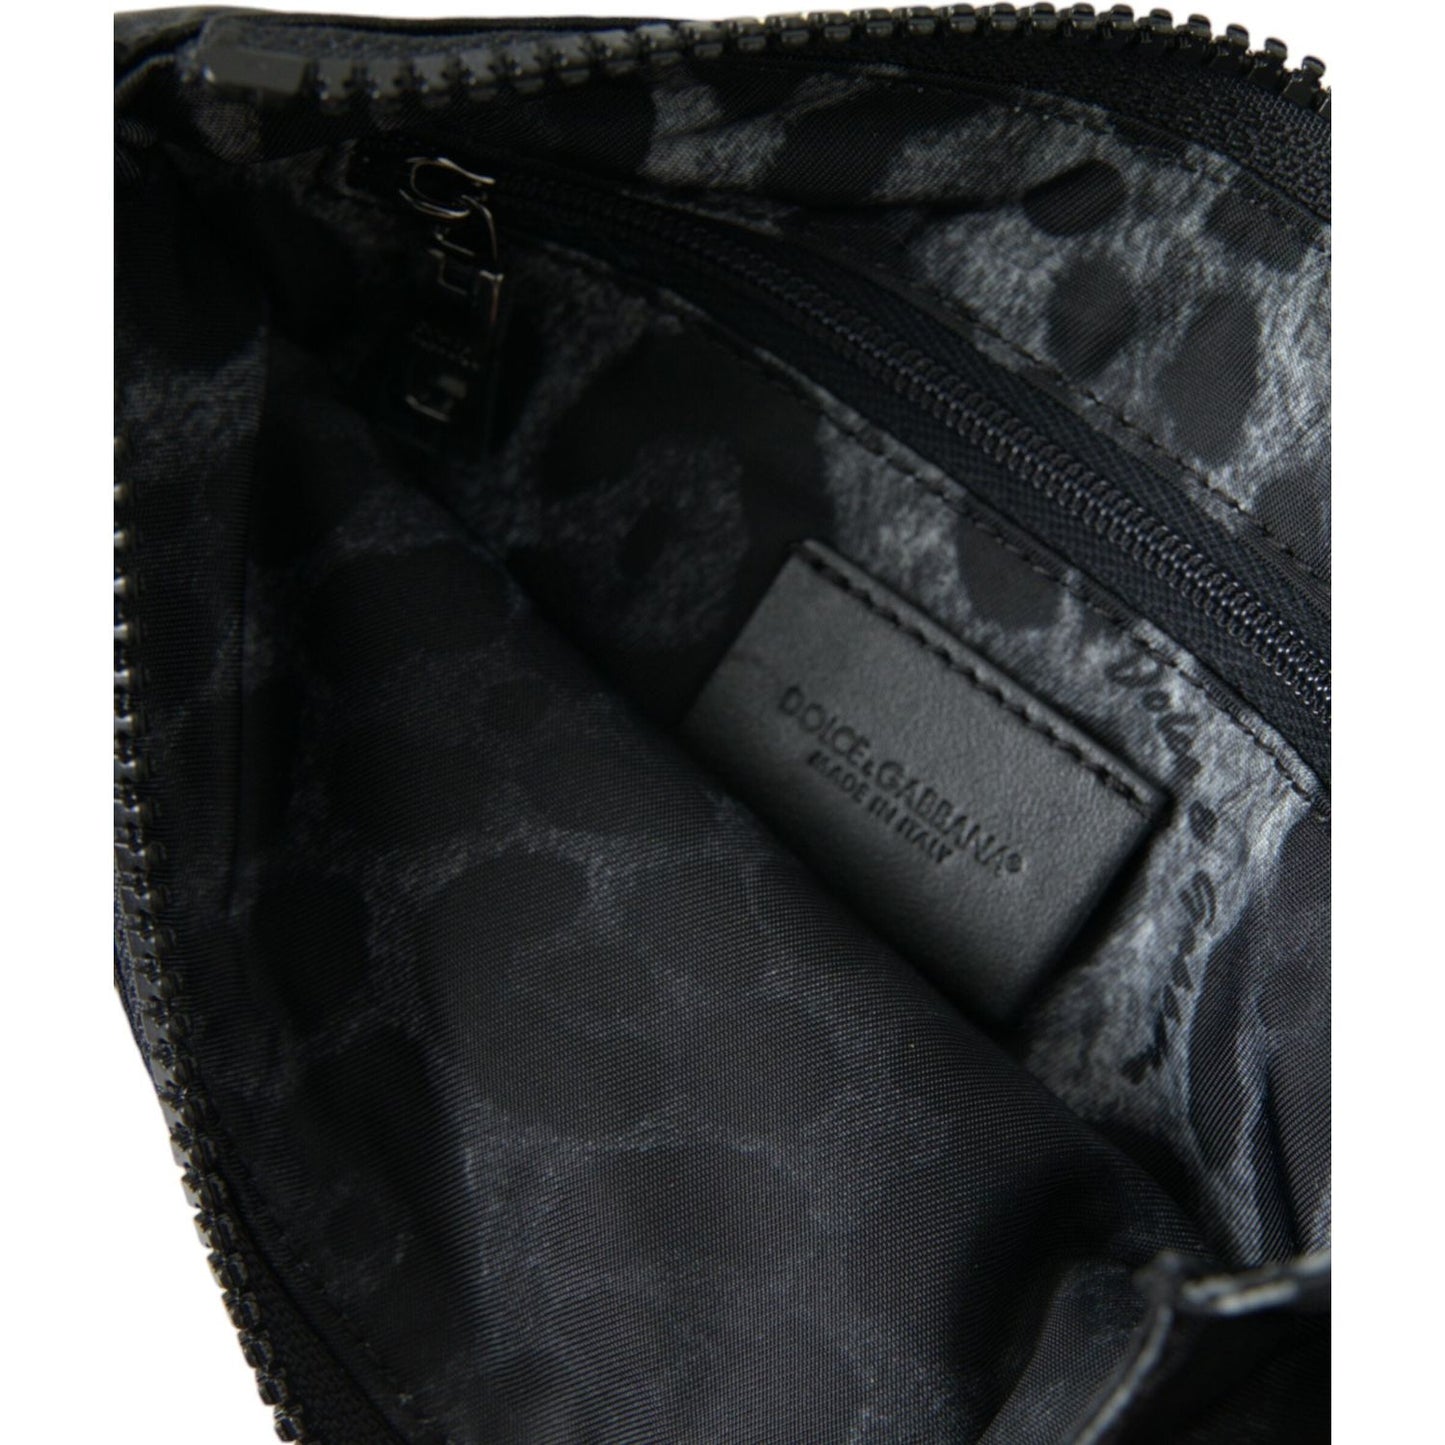 Dolce & GabbanaSleek Designer Nylon-Leather Pouch in BlackMcRichard Designer Brands£309.00